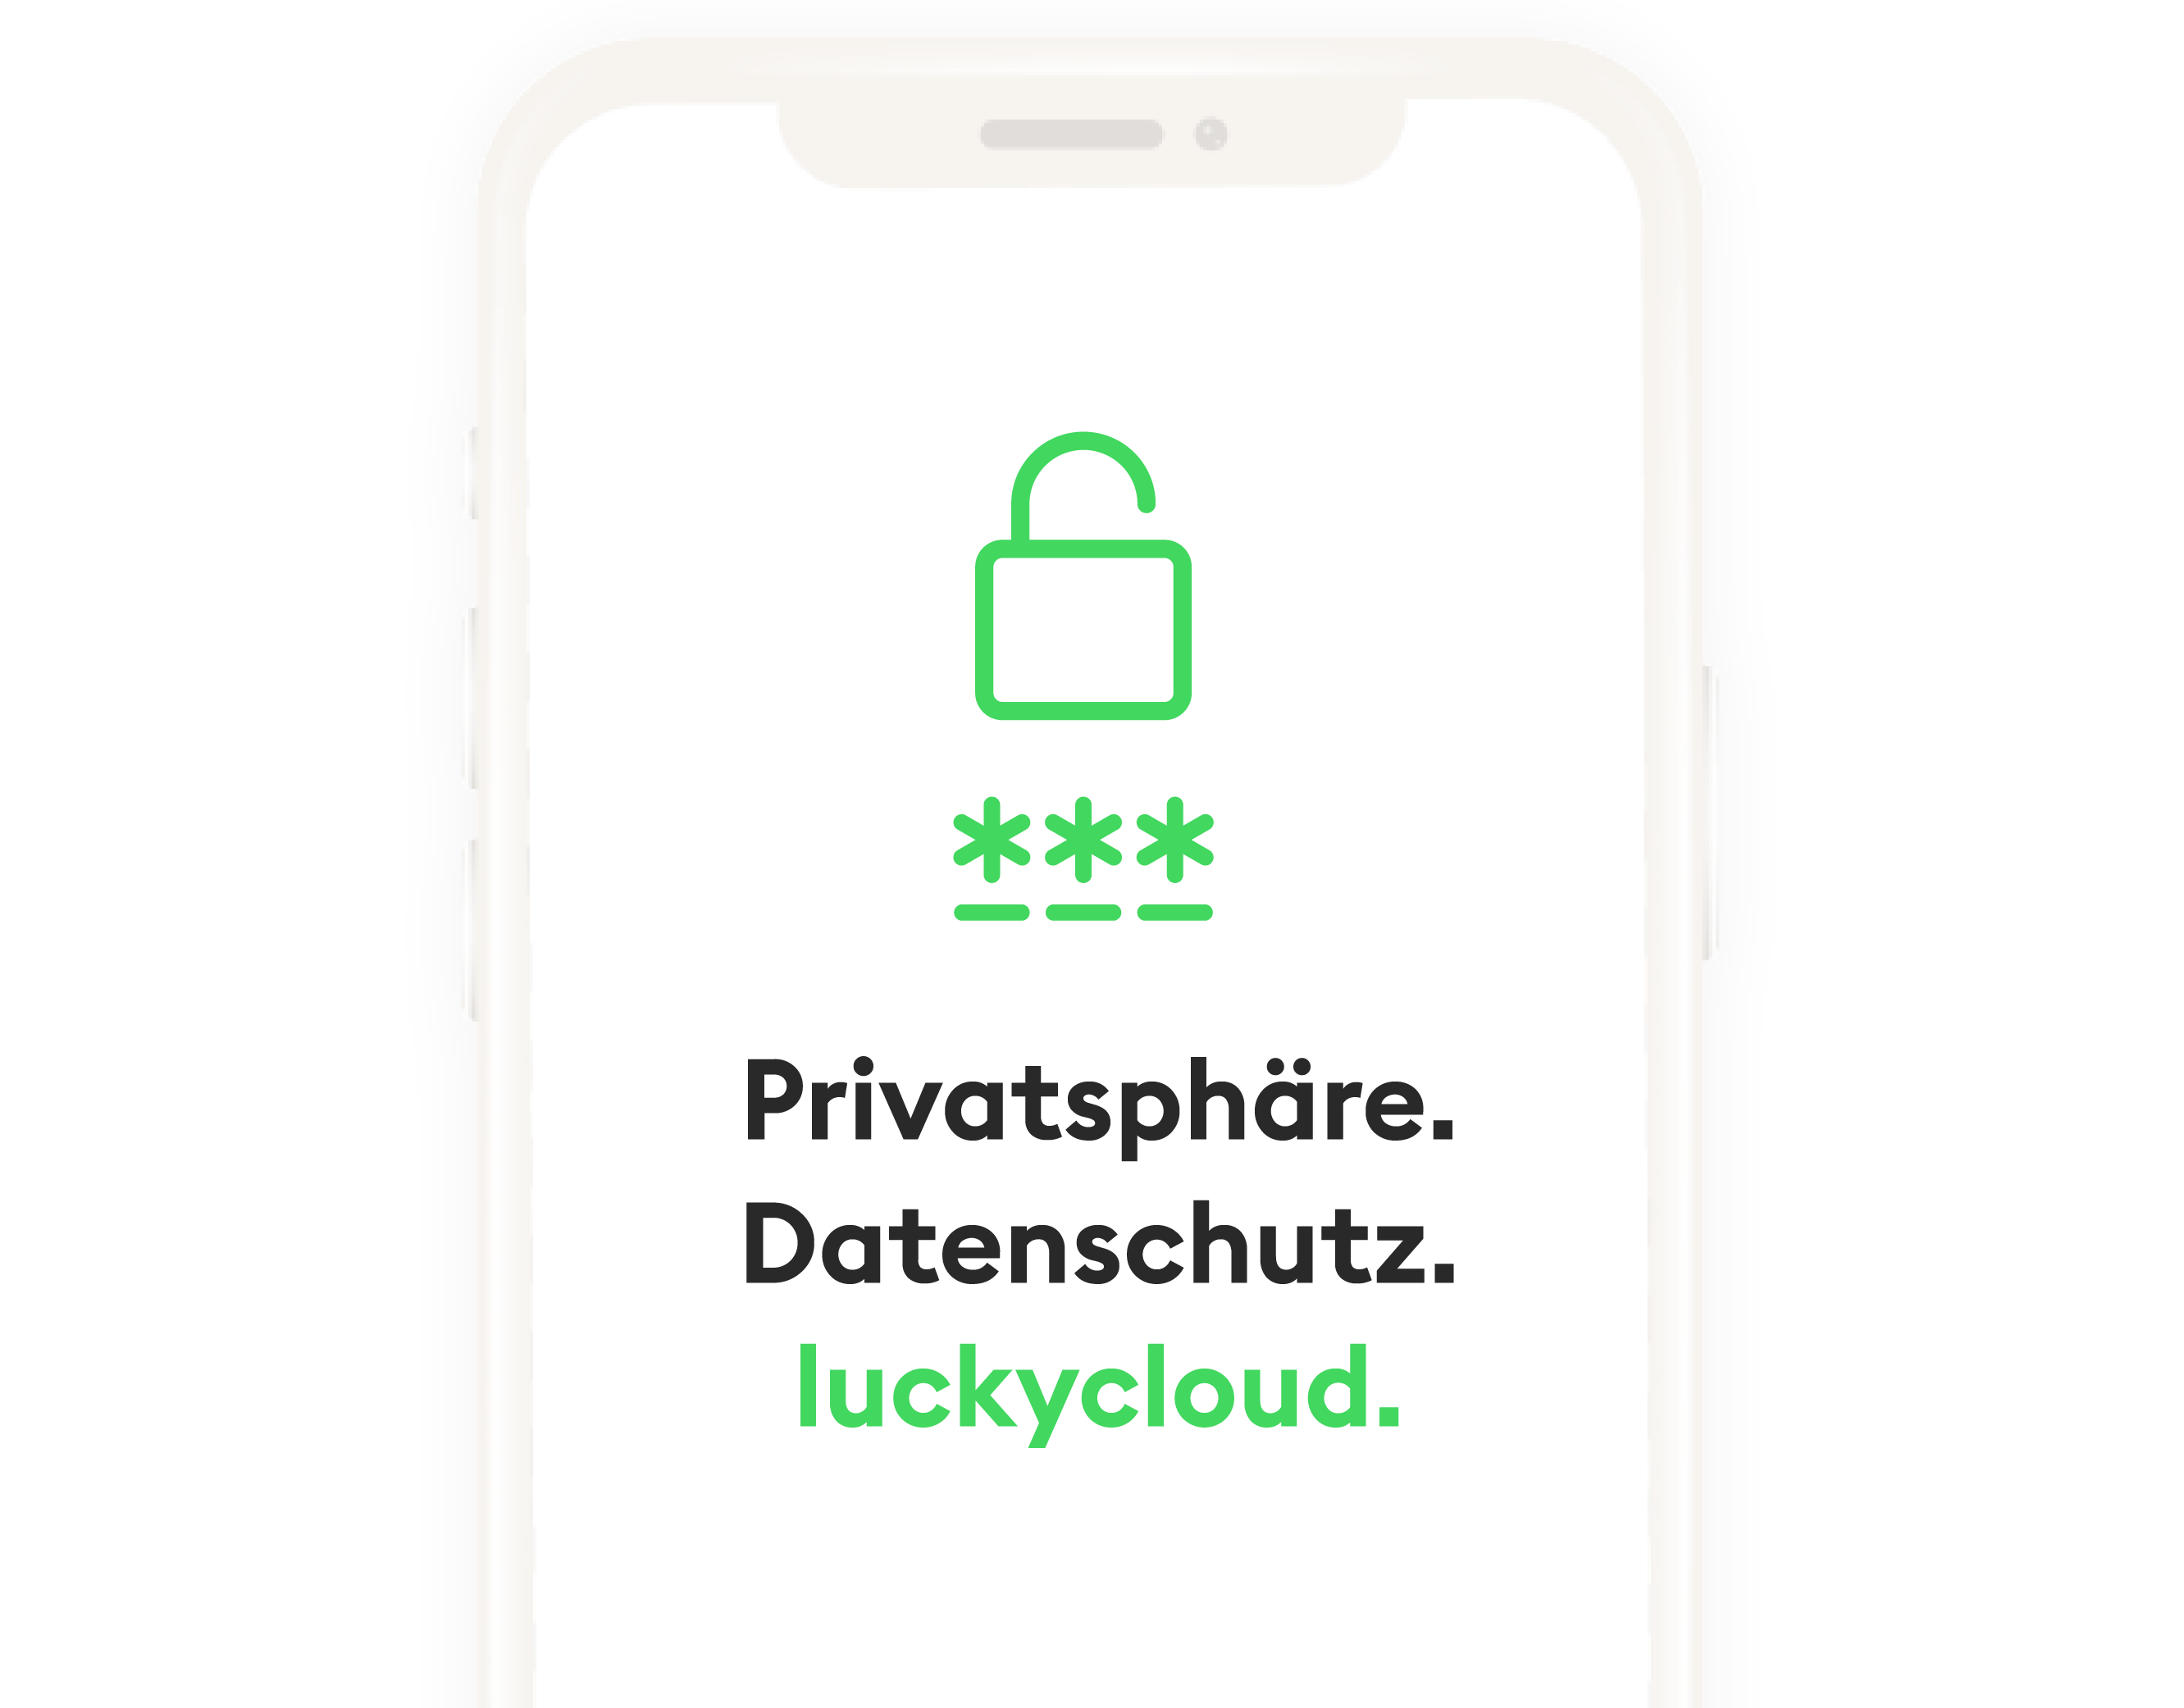 Darstellung eines Smartphones mit den Wörtern Privatsphäre, Datenschutz, luckycloud auf dem Bildschirm.